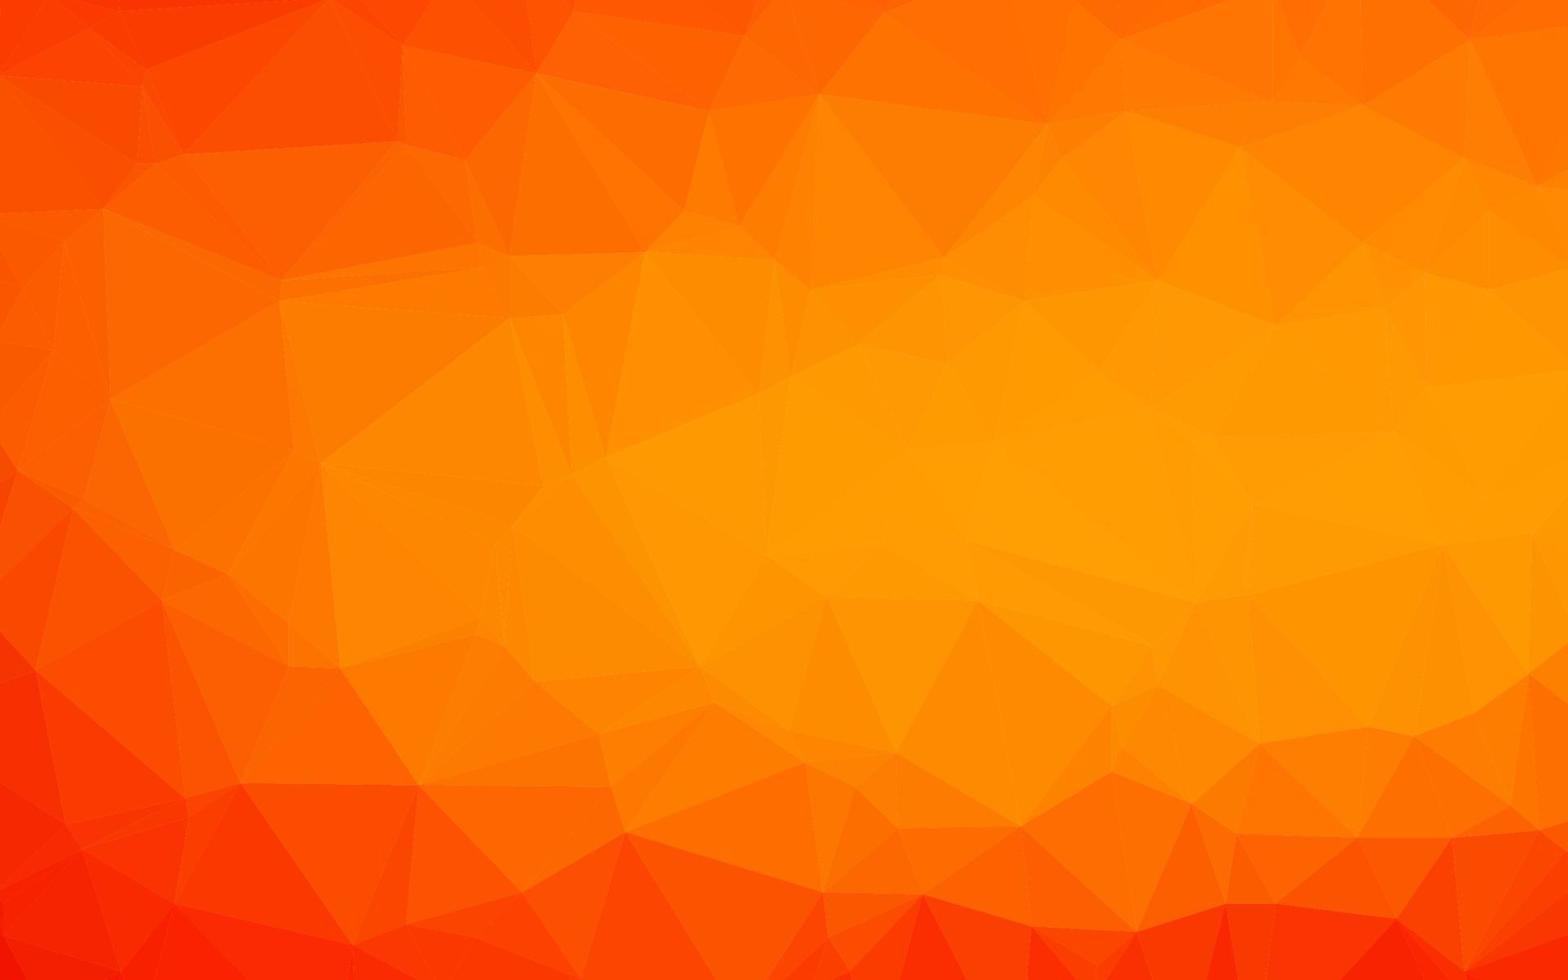 modelo poligonal de vetor laranja claro.